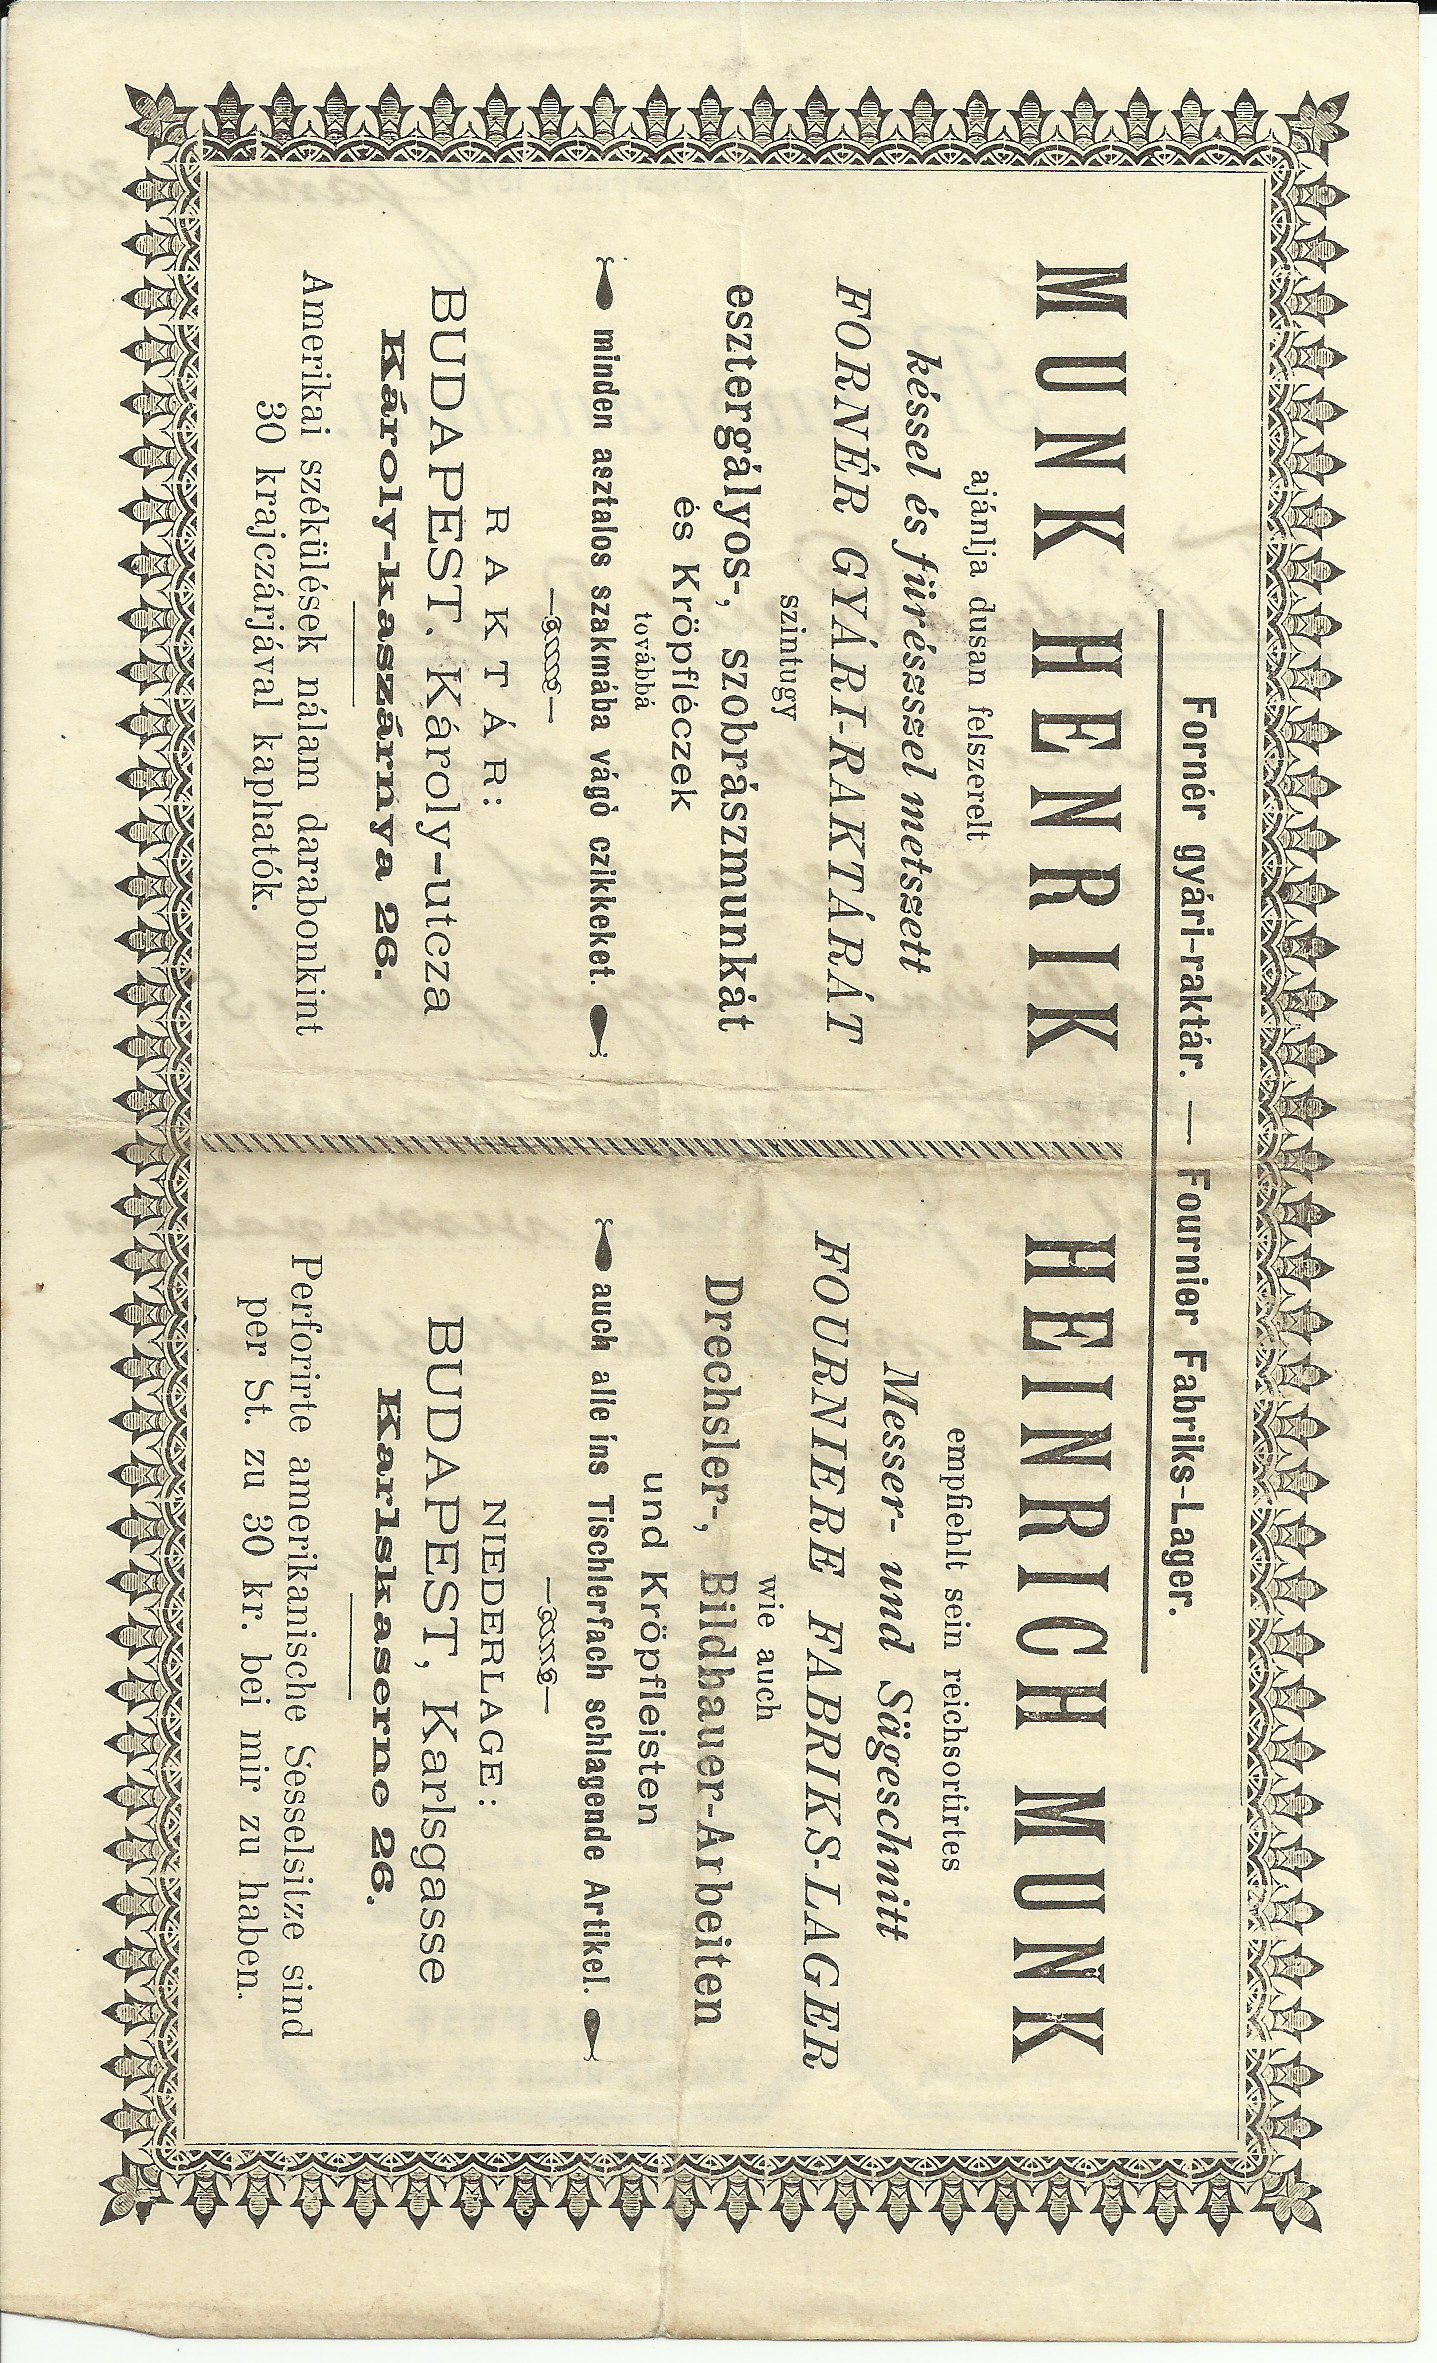 Munk Henrik számla (Magyar Kereskedelmi és Vendéglátóipari Múzeum CC BY-NC-SA)